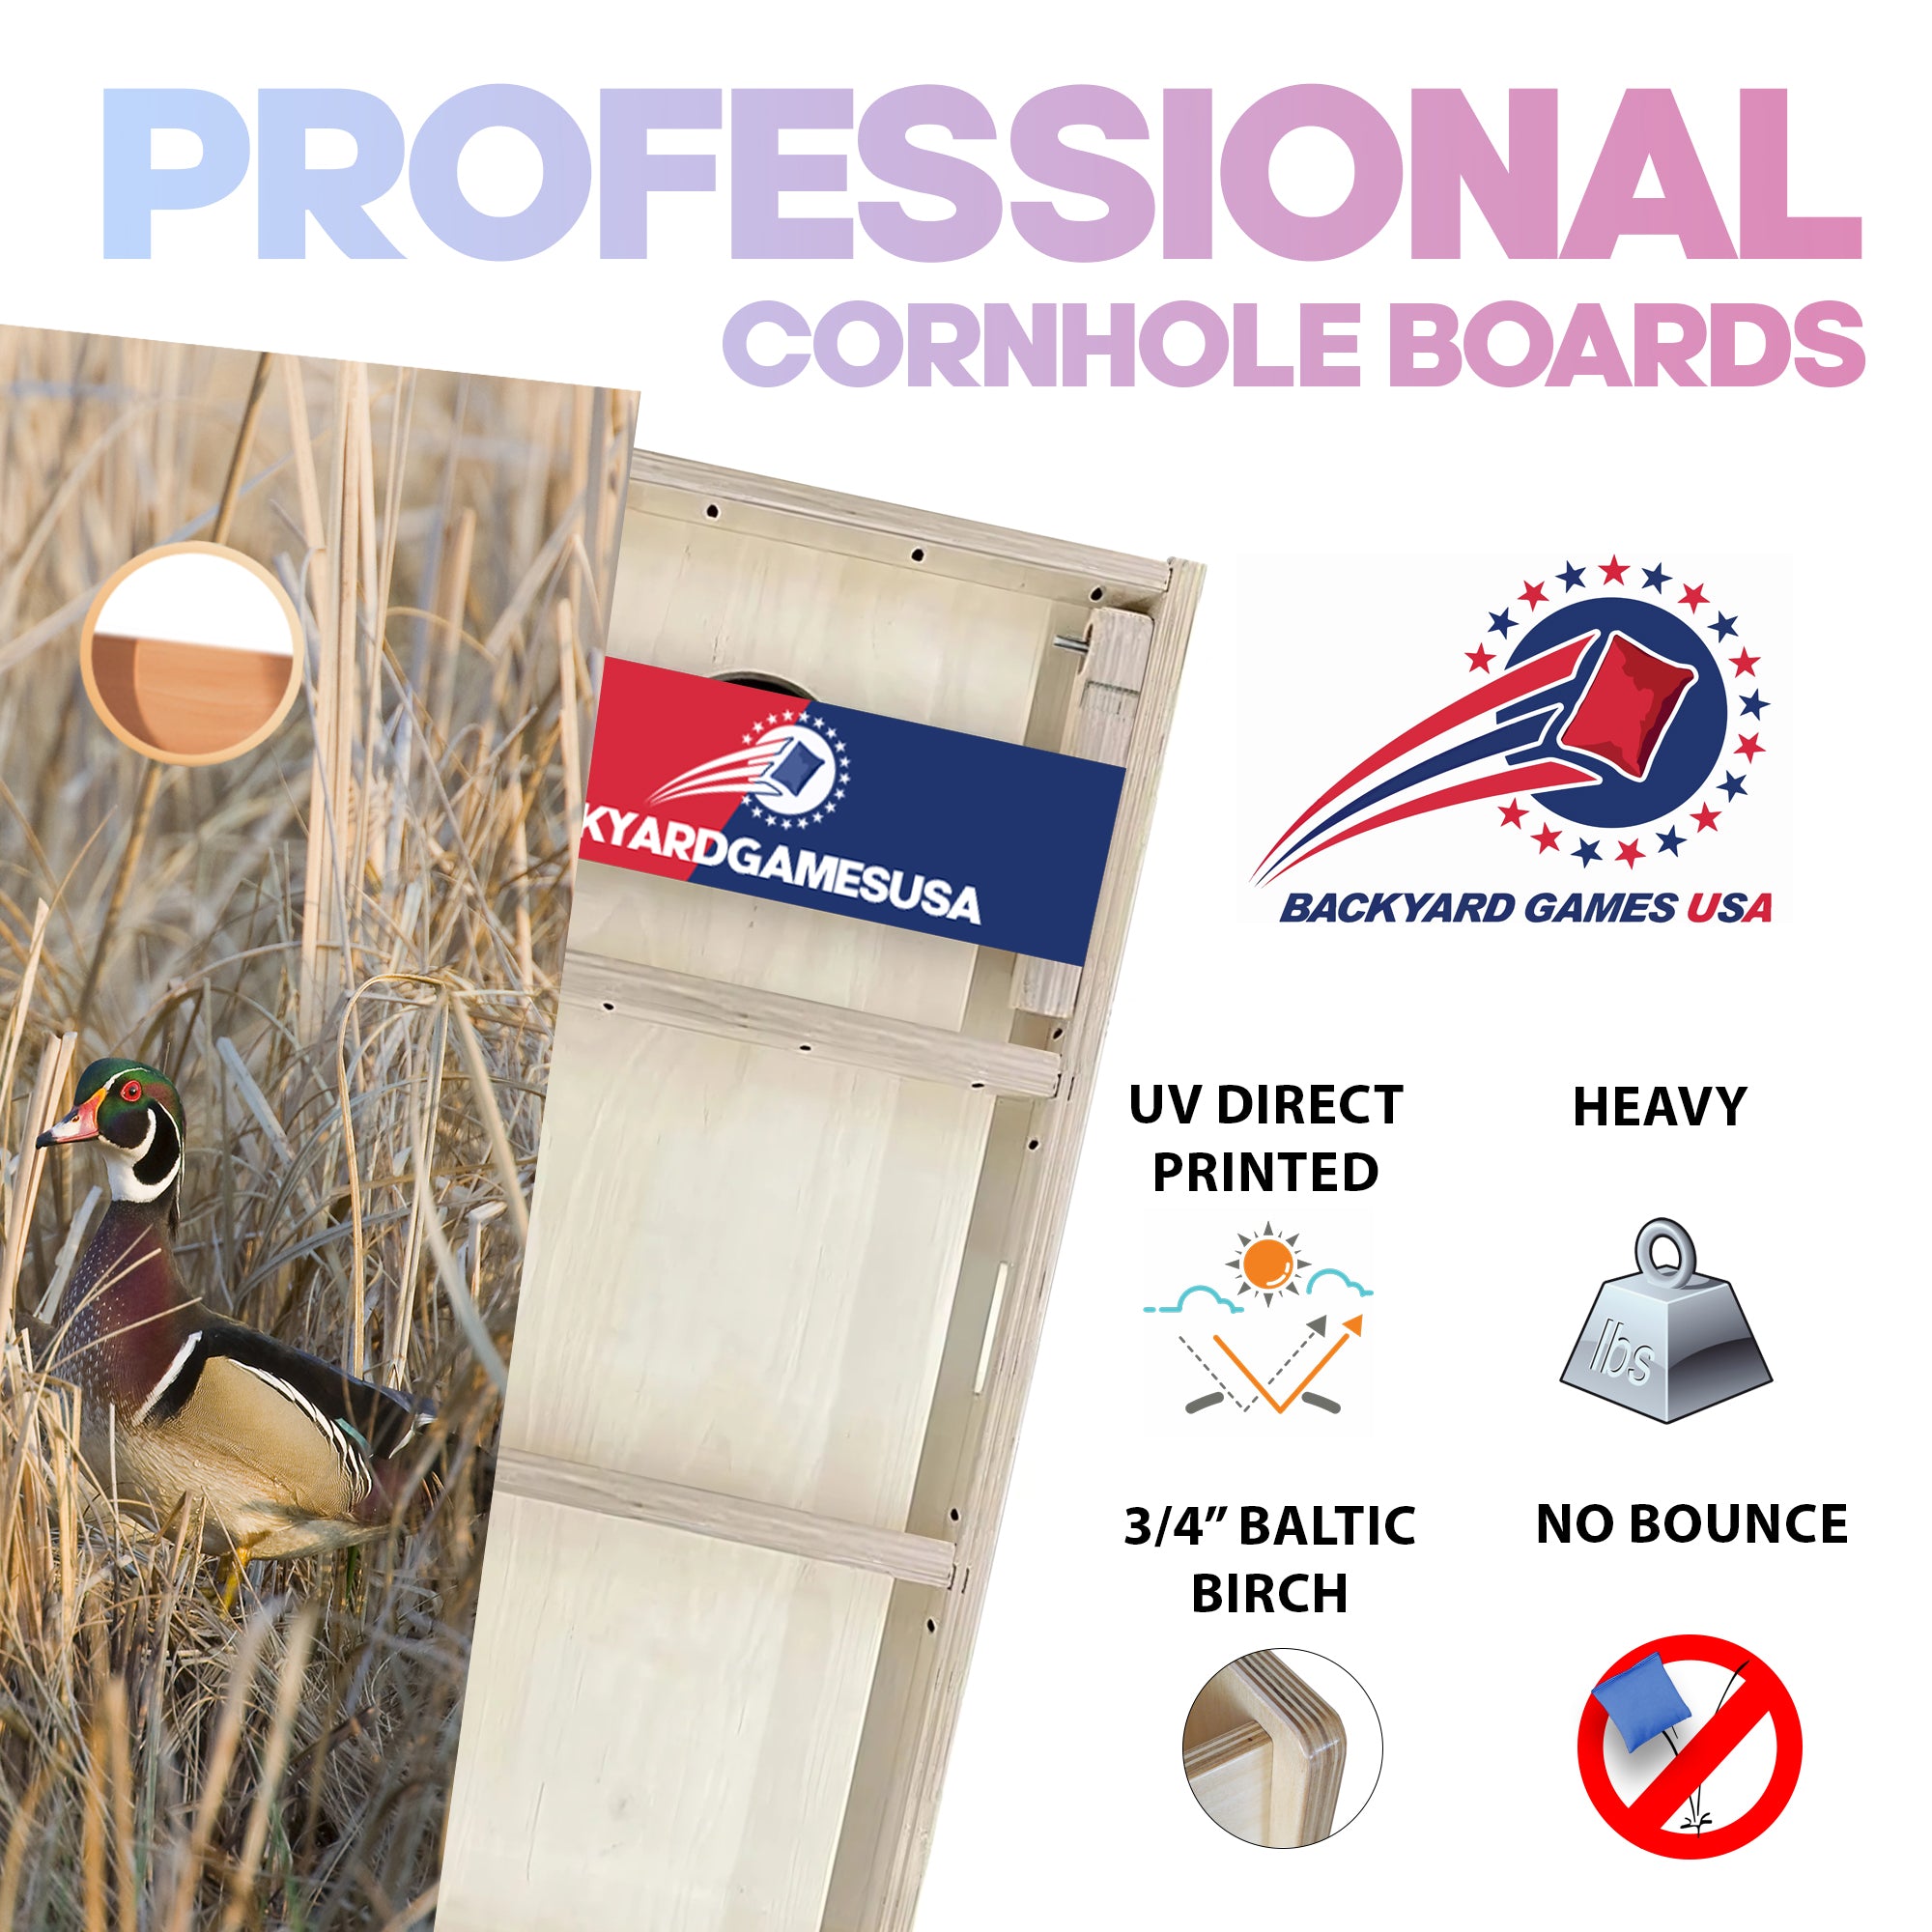 Ducks in Grass Professional Cornhole Boards